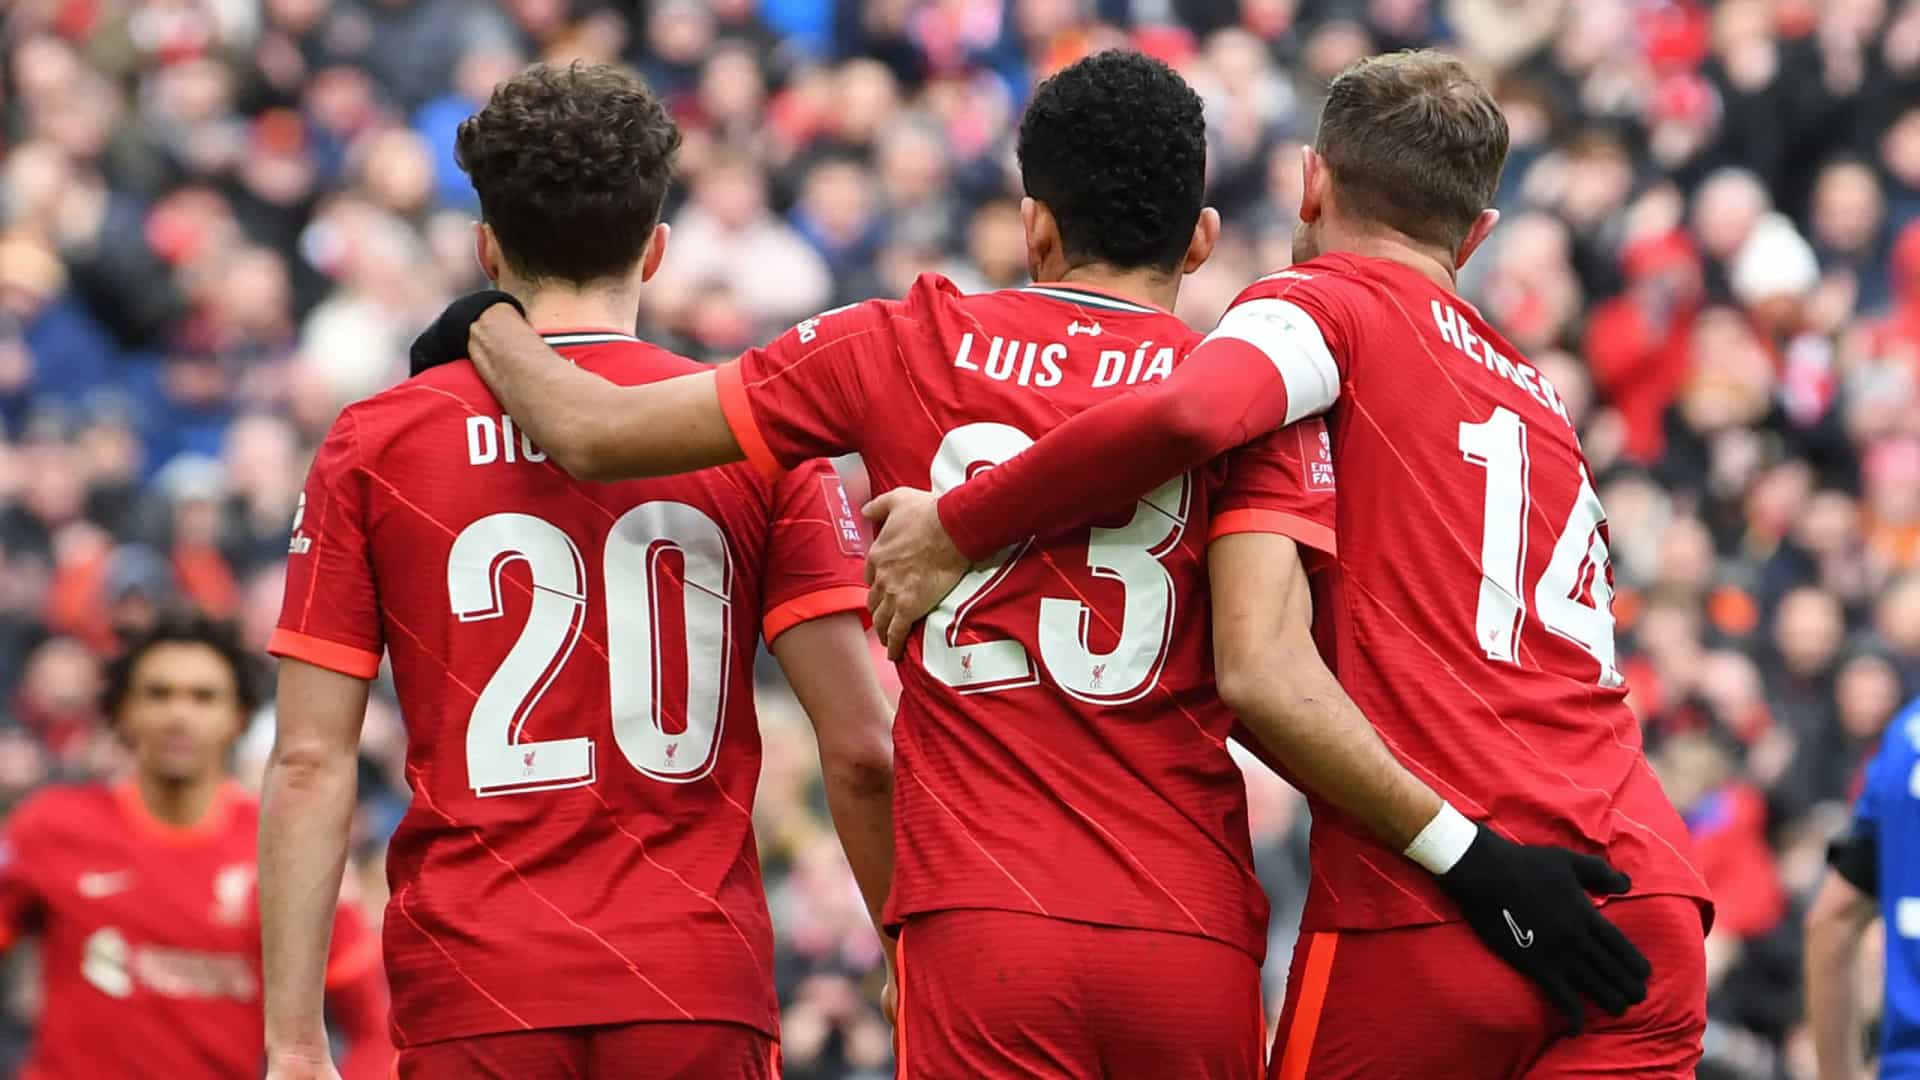 «C’est un joueur de classe mondiale», Luis Díaz a déjà convaincu l’équipe de Liverpool